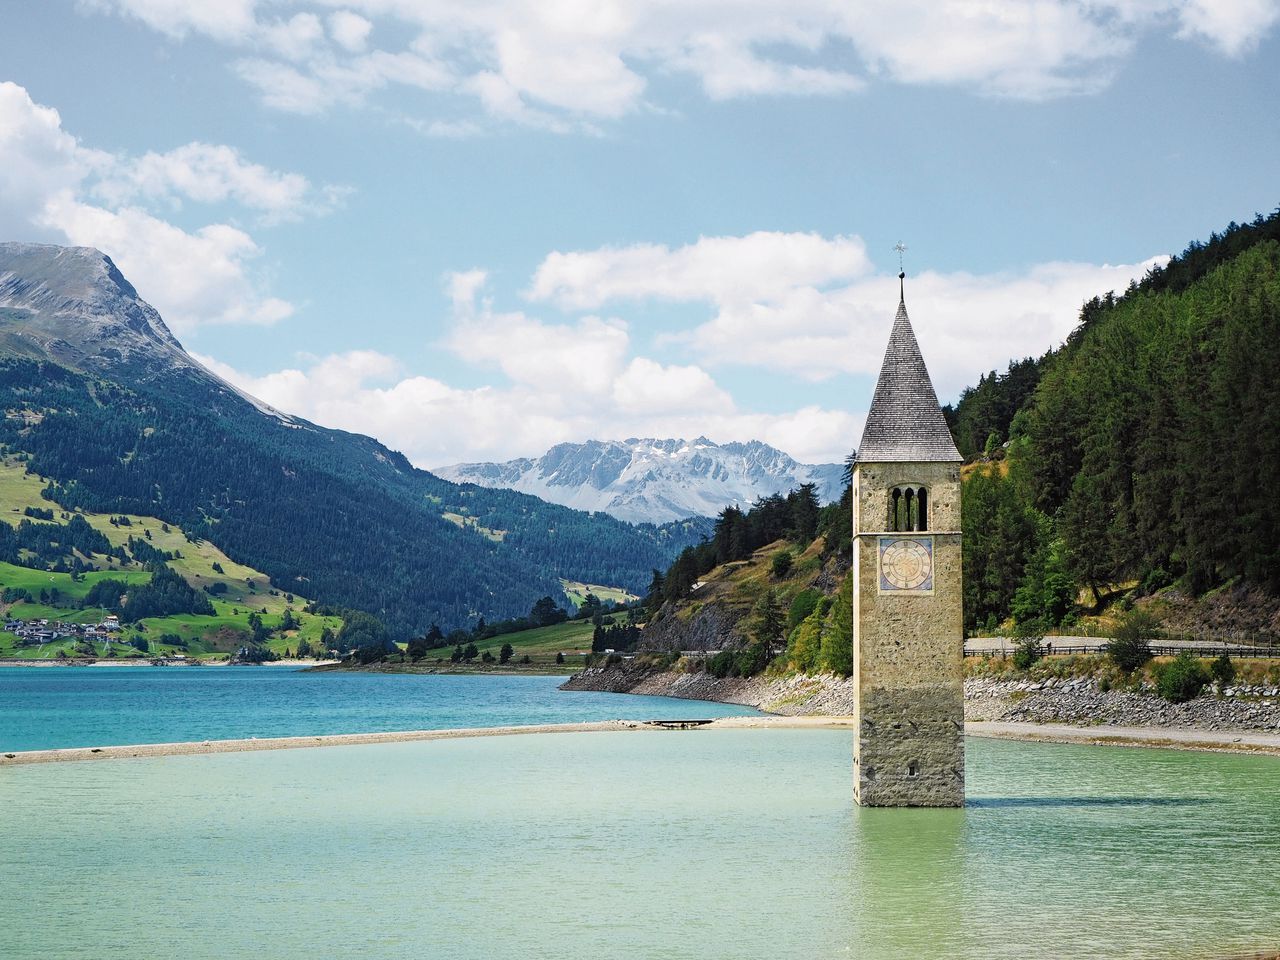 De oude klokkentoren van het Italiaanse dorp Curon rijst op uit het meer van Resia